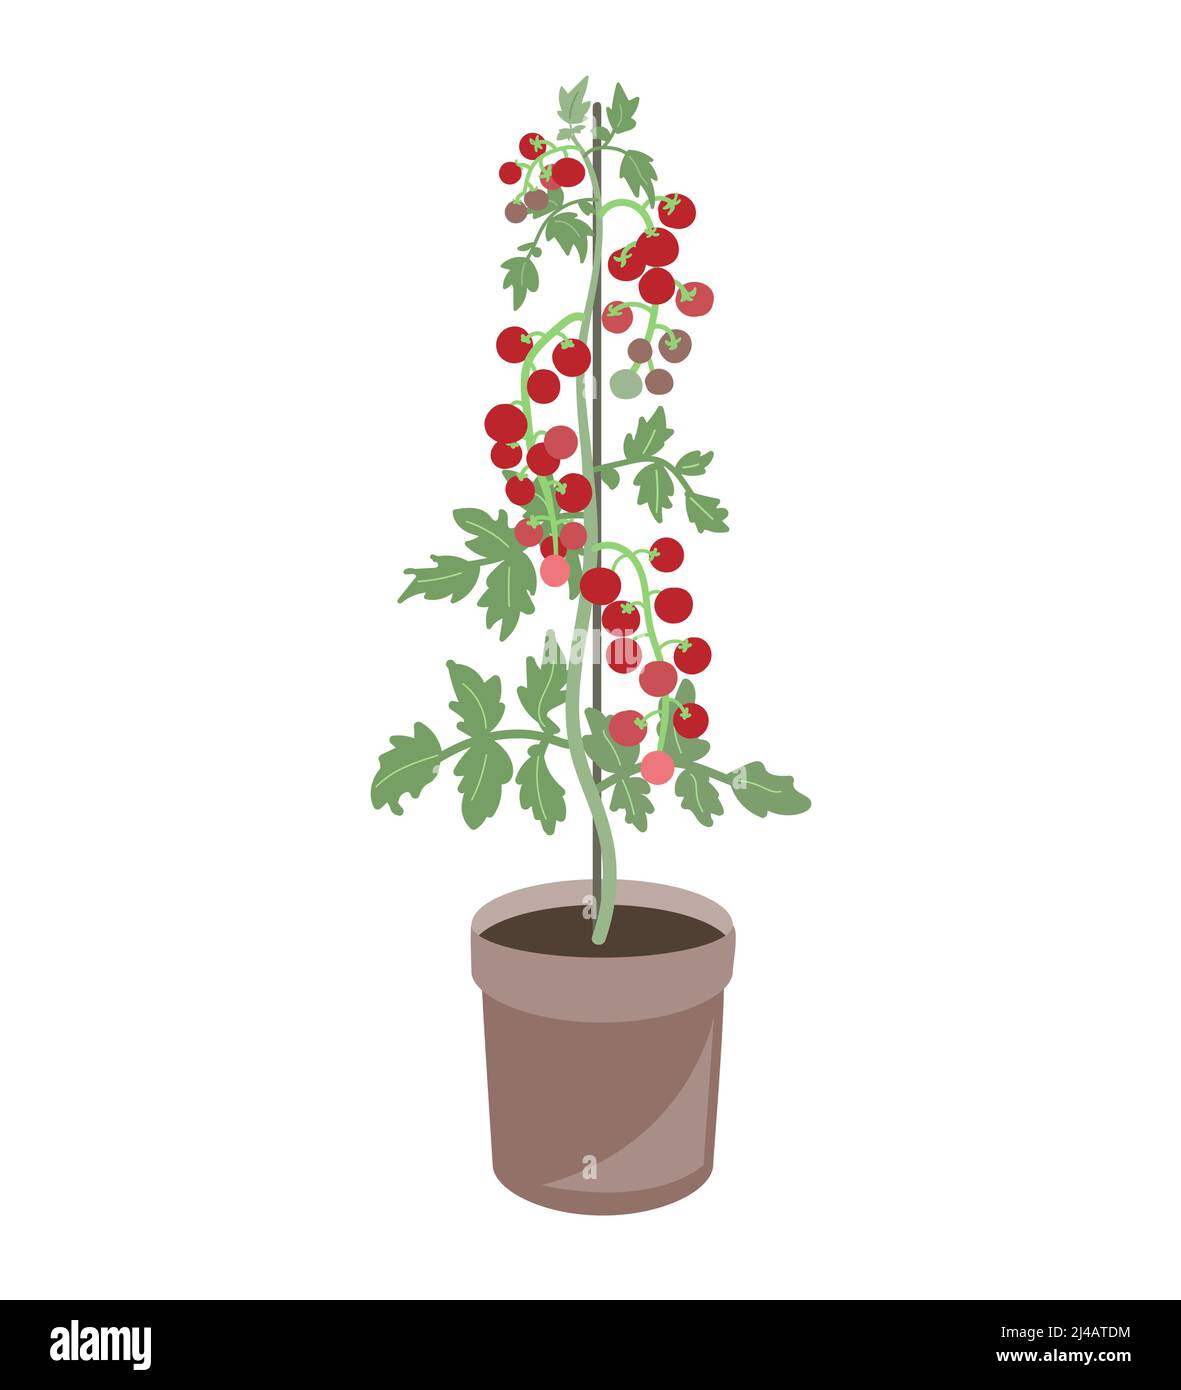 Plante de tomate de cerise dans un pot de fleur. Illustration vectorielle isolée sur blanc Illustration de Vecteur